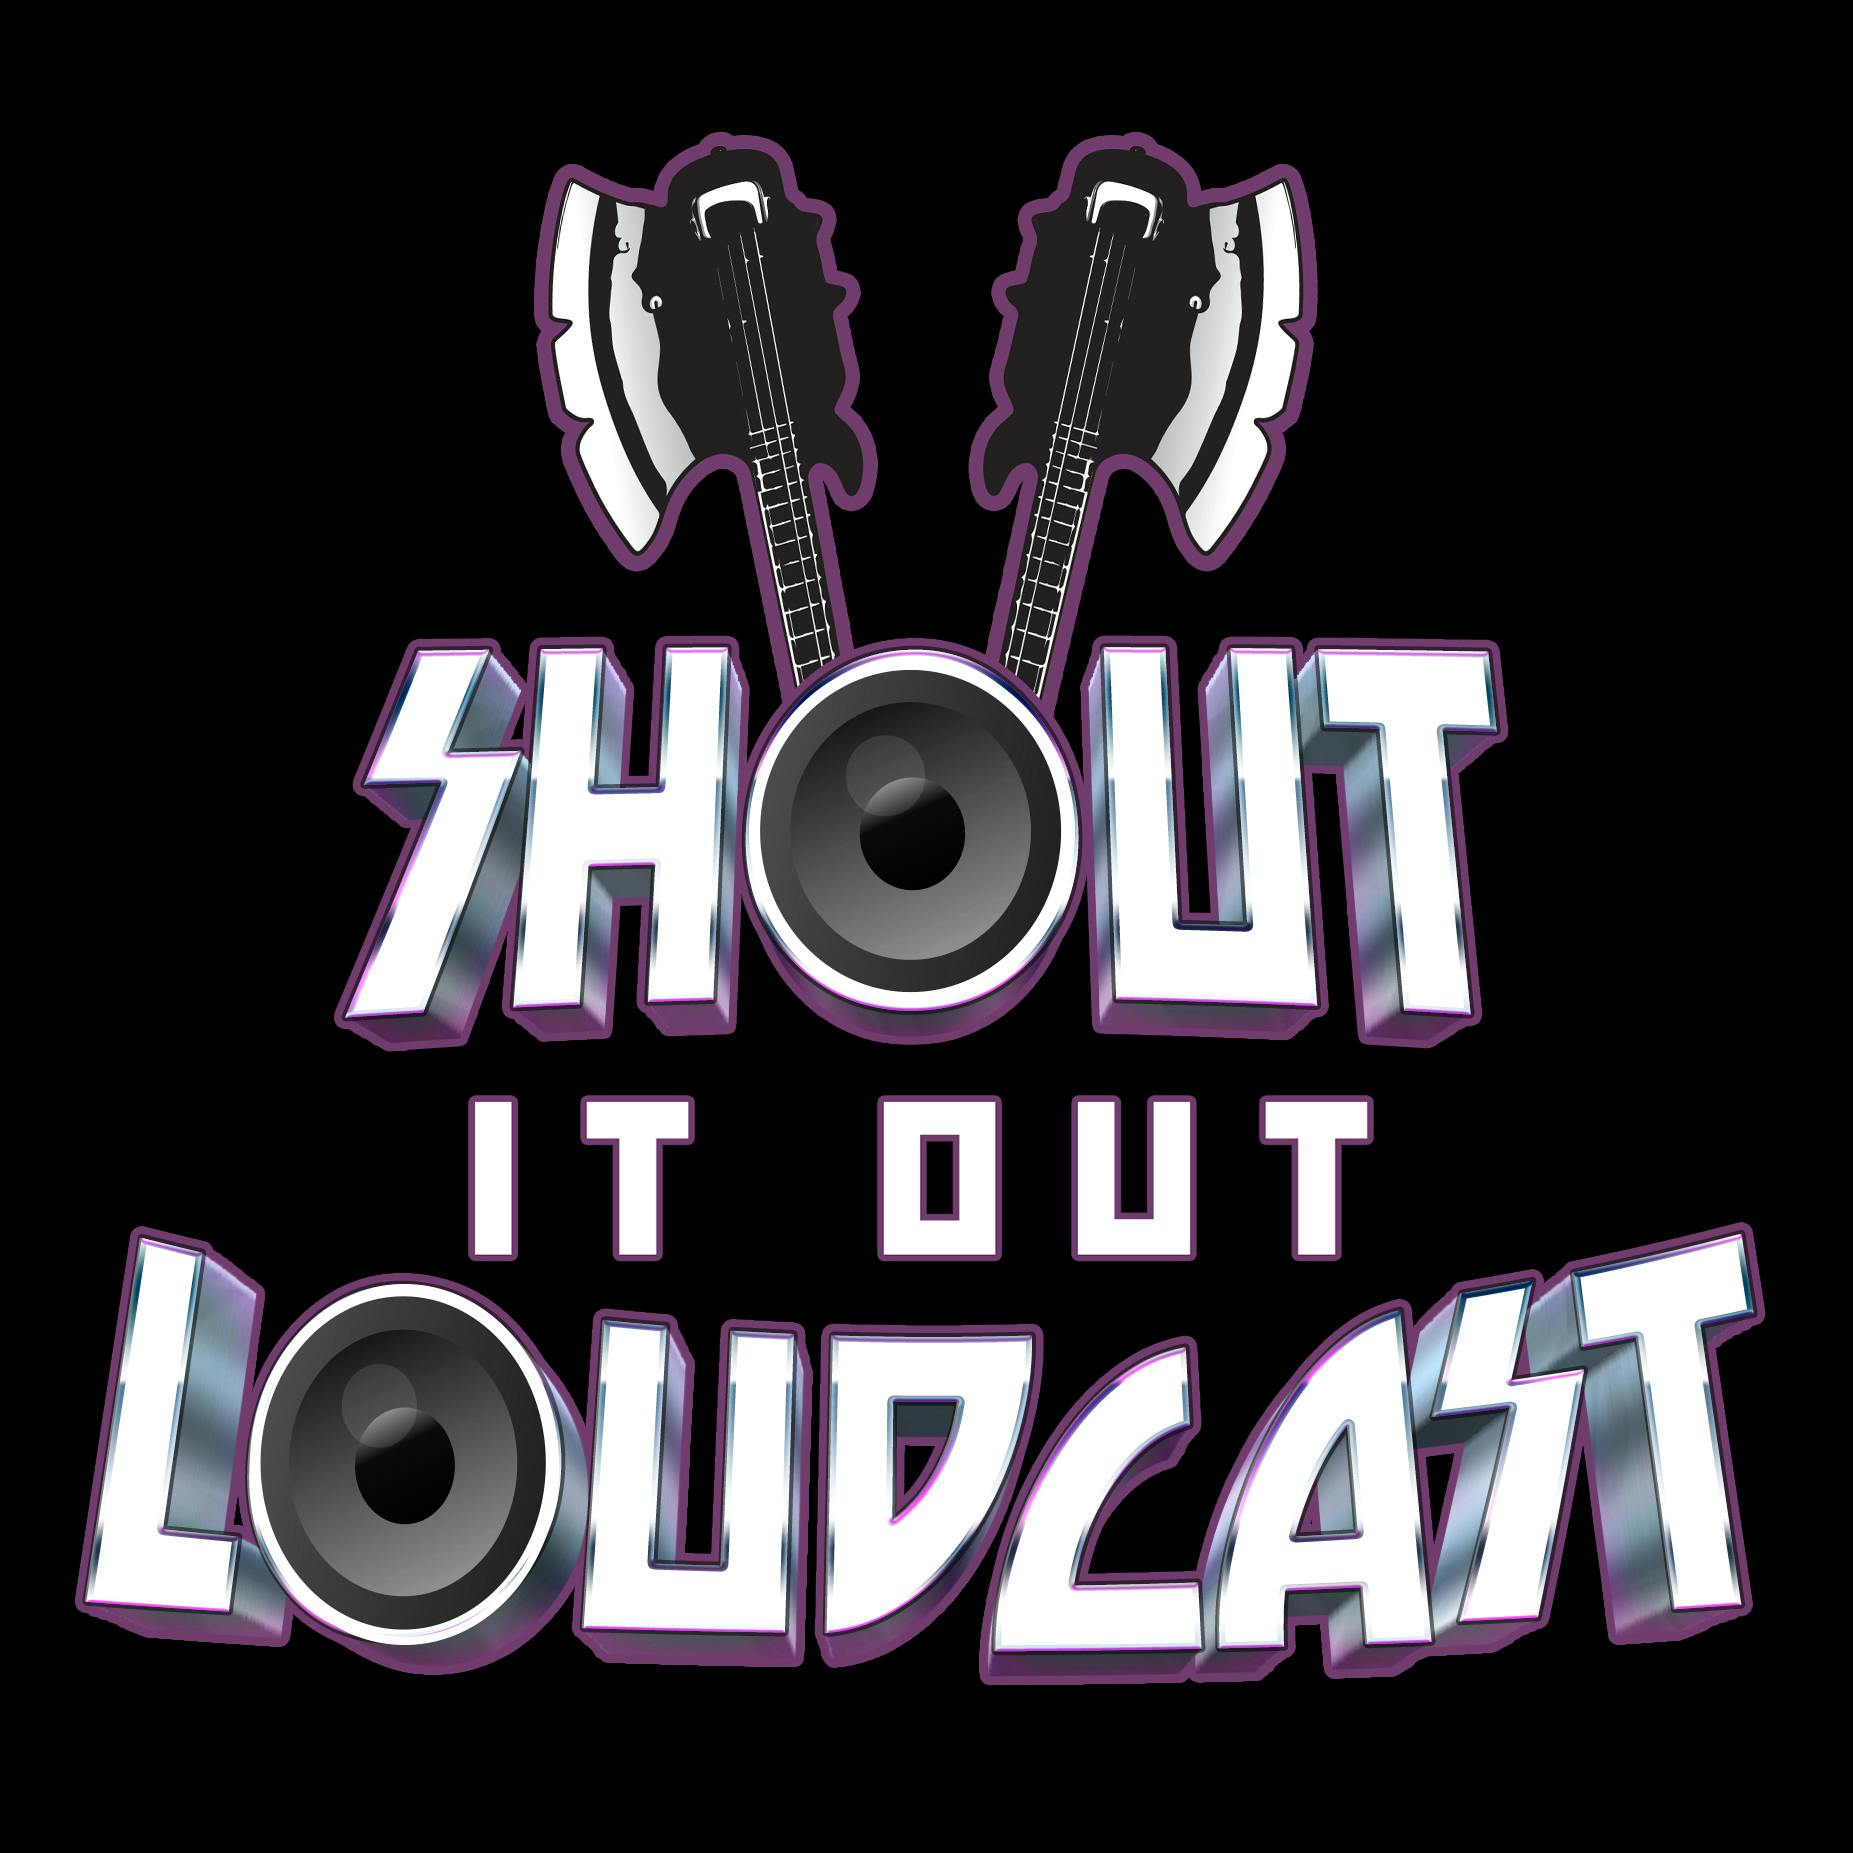 Shout It Out Loudcast: ”David Ellefson”